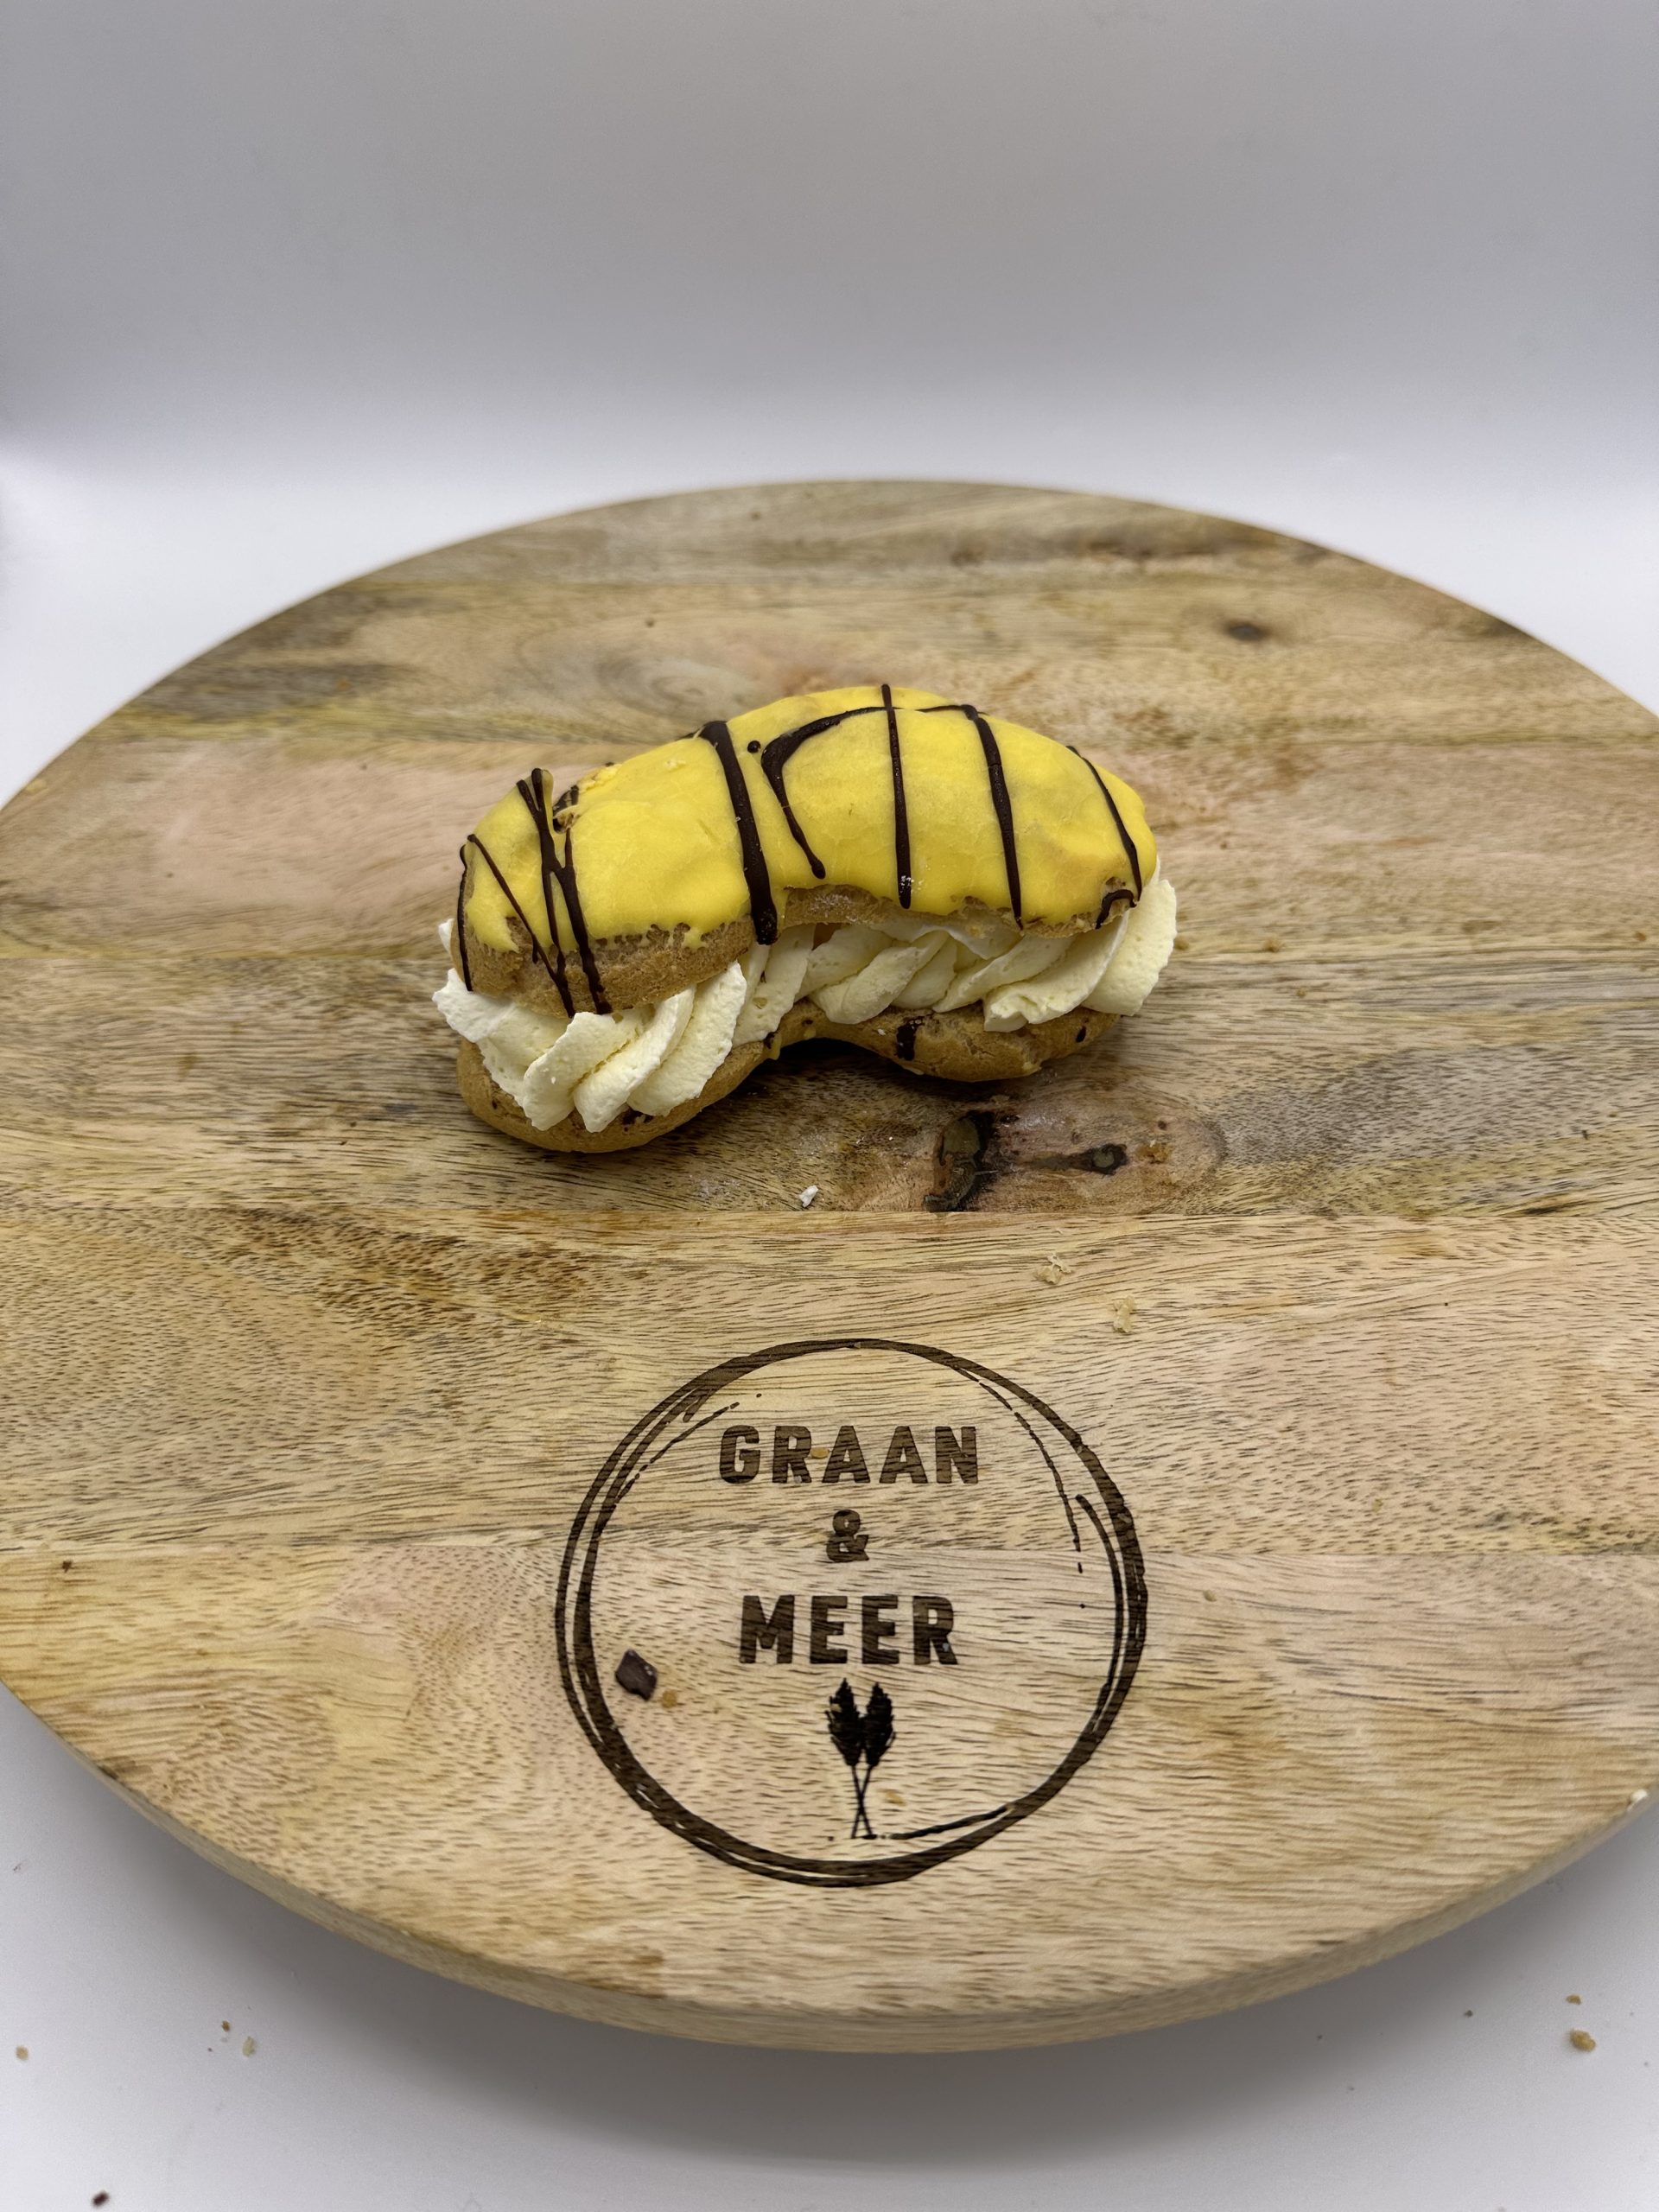 Bananen soes - Bakkerij Graan & meer